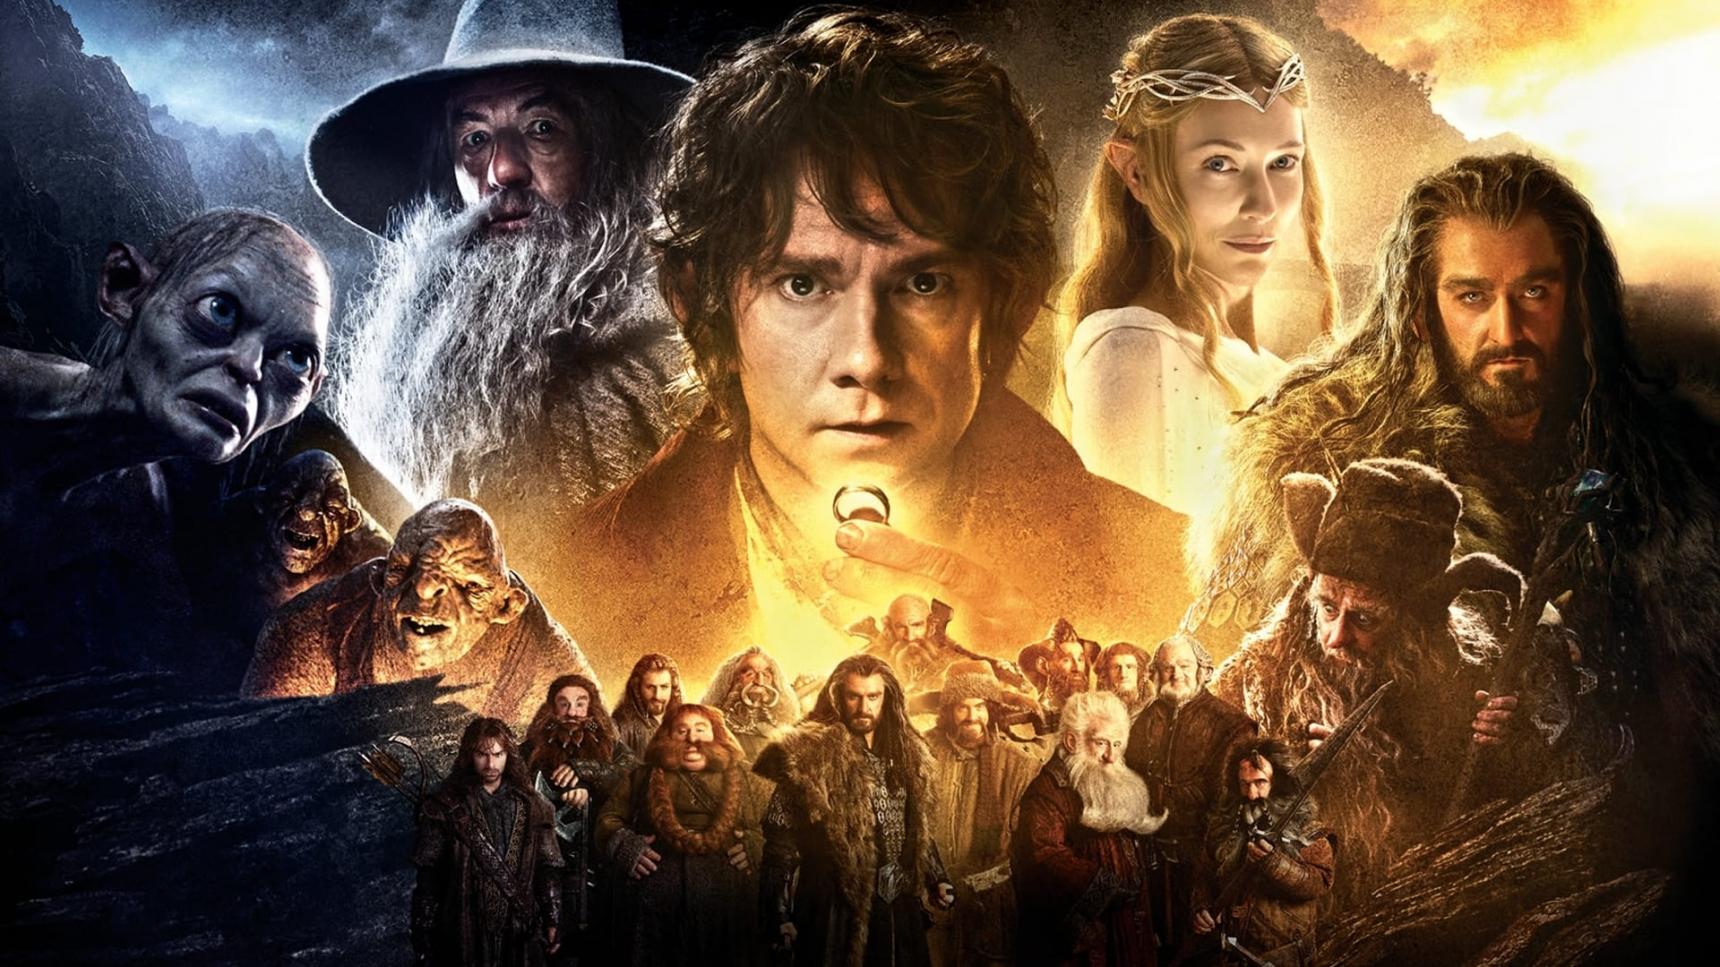 Fondo de pantalla de la película El hobbit: Un viaje inesperado en Cuevana 3 gratis